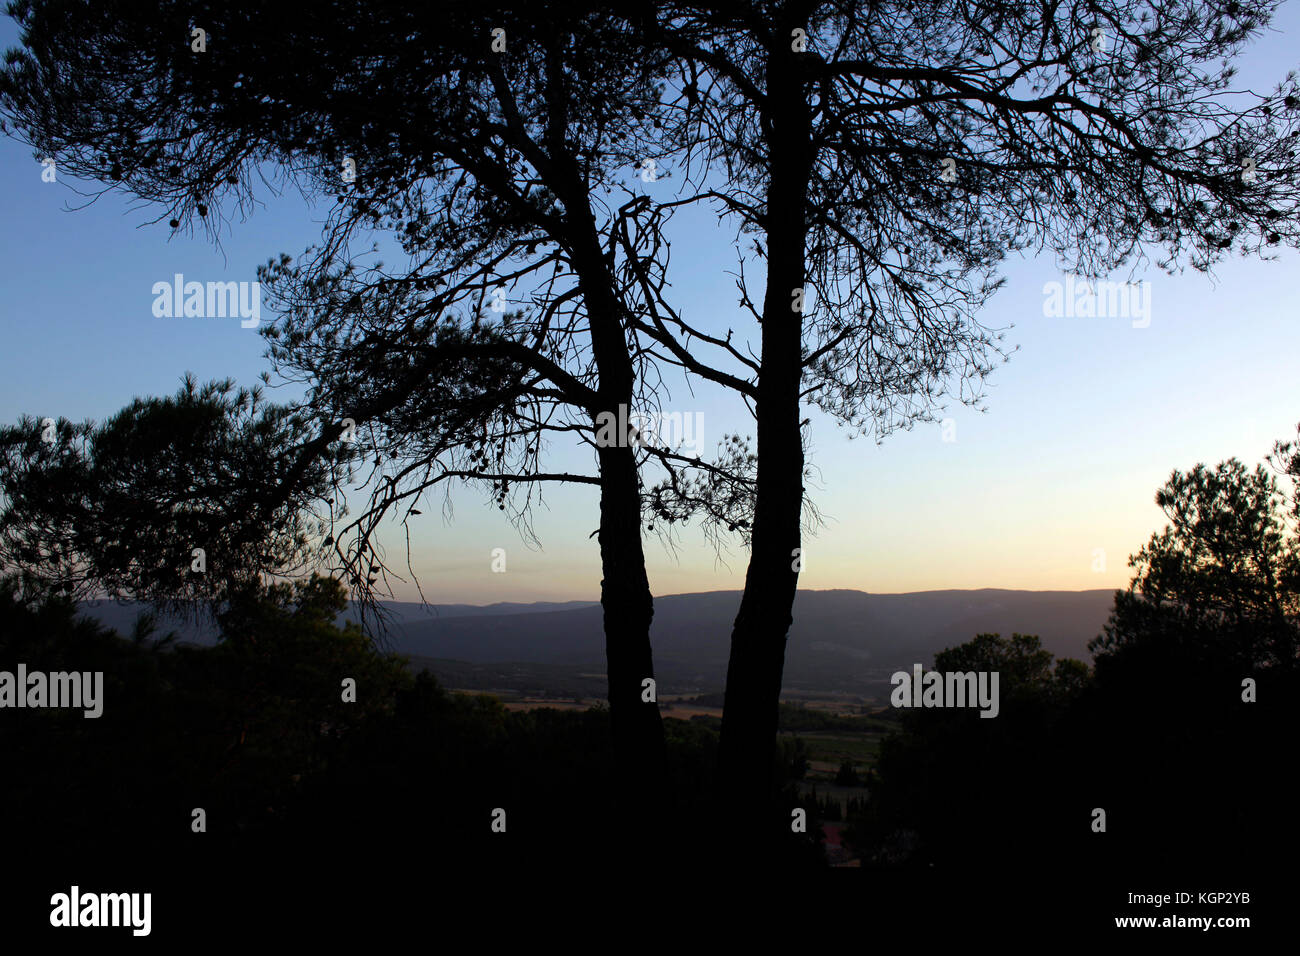 Sonnenuntergang mit Kiefern in der Region Conca de Barberà in Katalonien, Spanien. Stockfoto